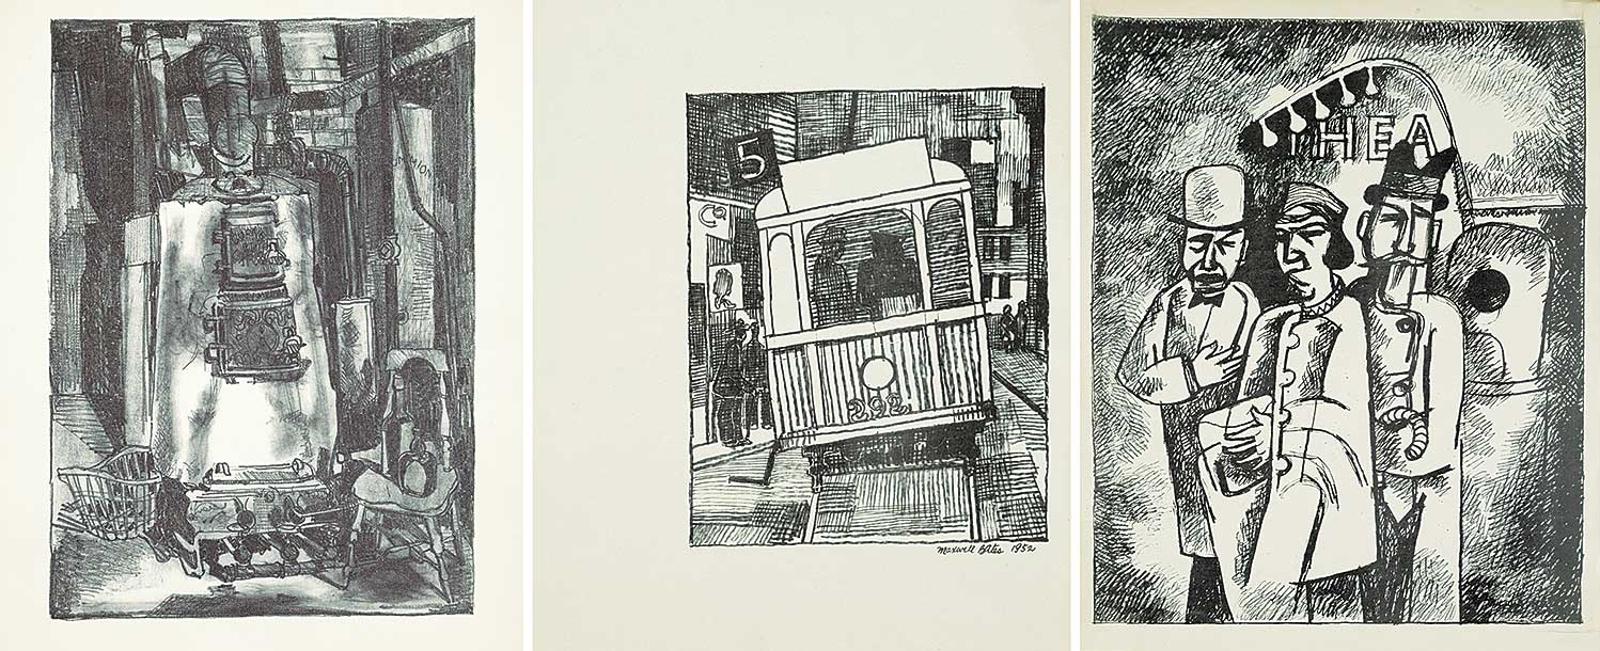 Maxwell Bennett Bates (1906-1980) - Three Bates Prints [Untitled - John Snow's Furnace / Untitled - Street Car / Theatre]